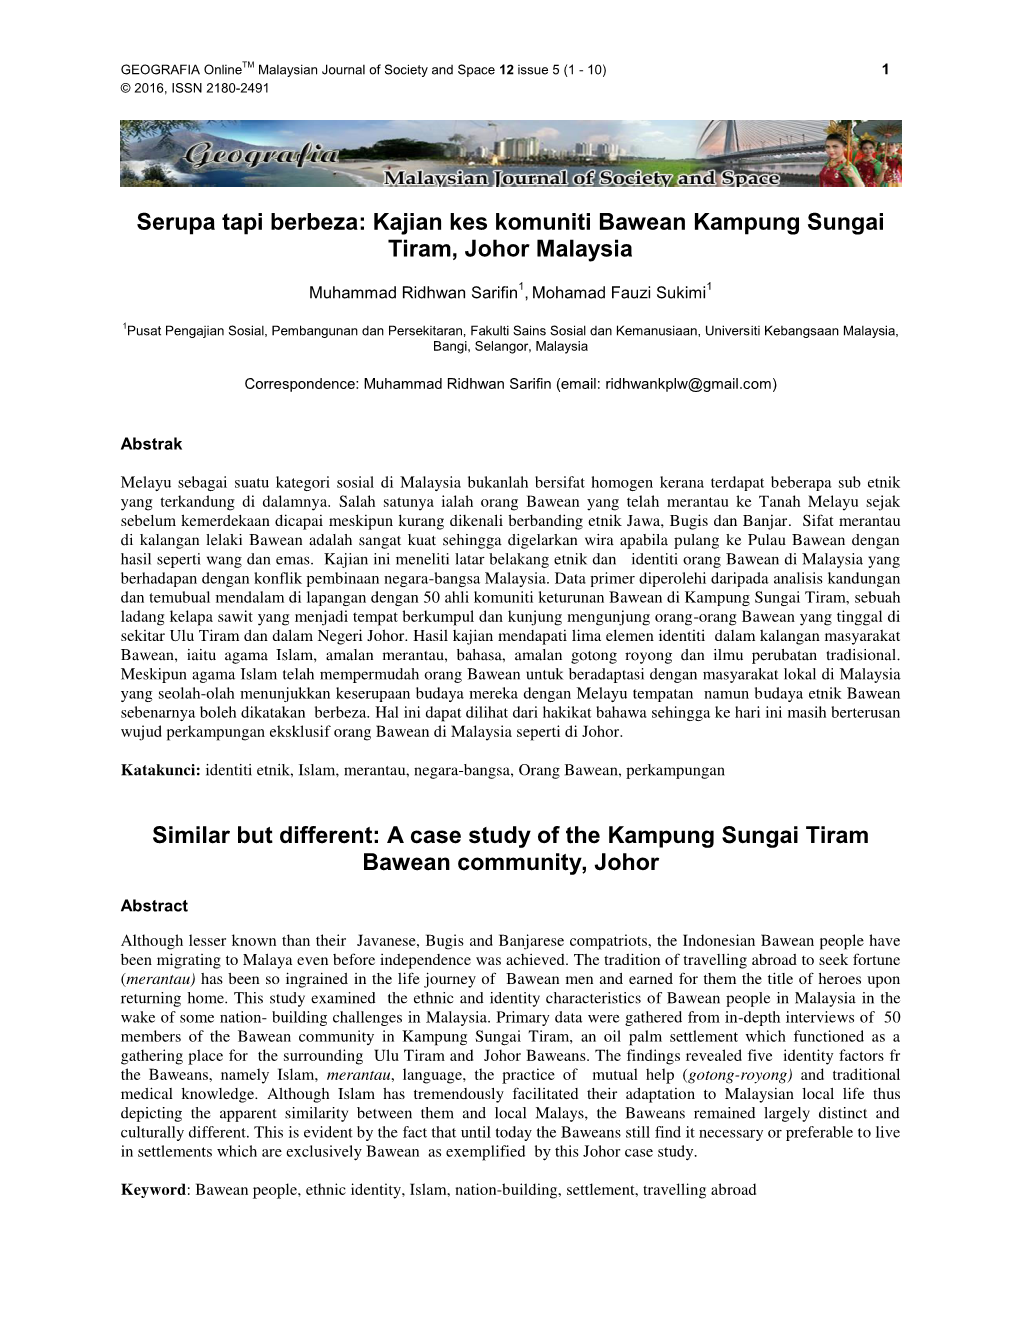 Kajian Kes Komuniti Bawean Kampung Sungai Tiram, Johor Malaysia